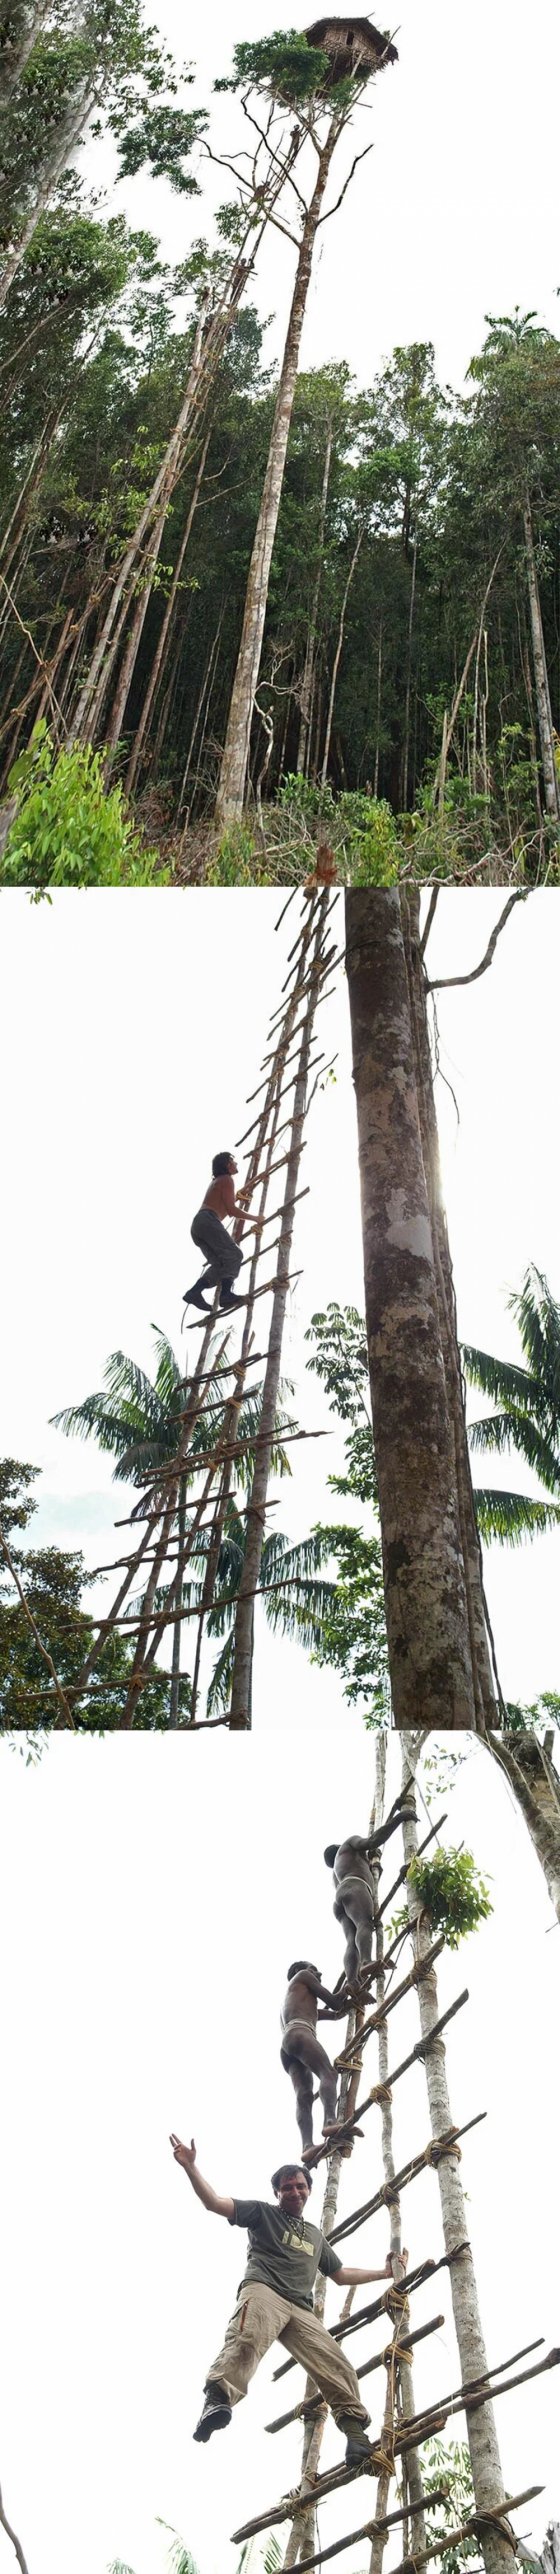 მხეცებისგან თავის დასაცავად, აი როგორ წარმოუდგენელ სიმაღლეზე აშენებენ ბუშმენები სახლებს ხეებზე